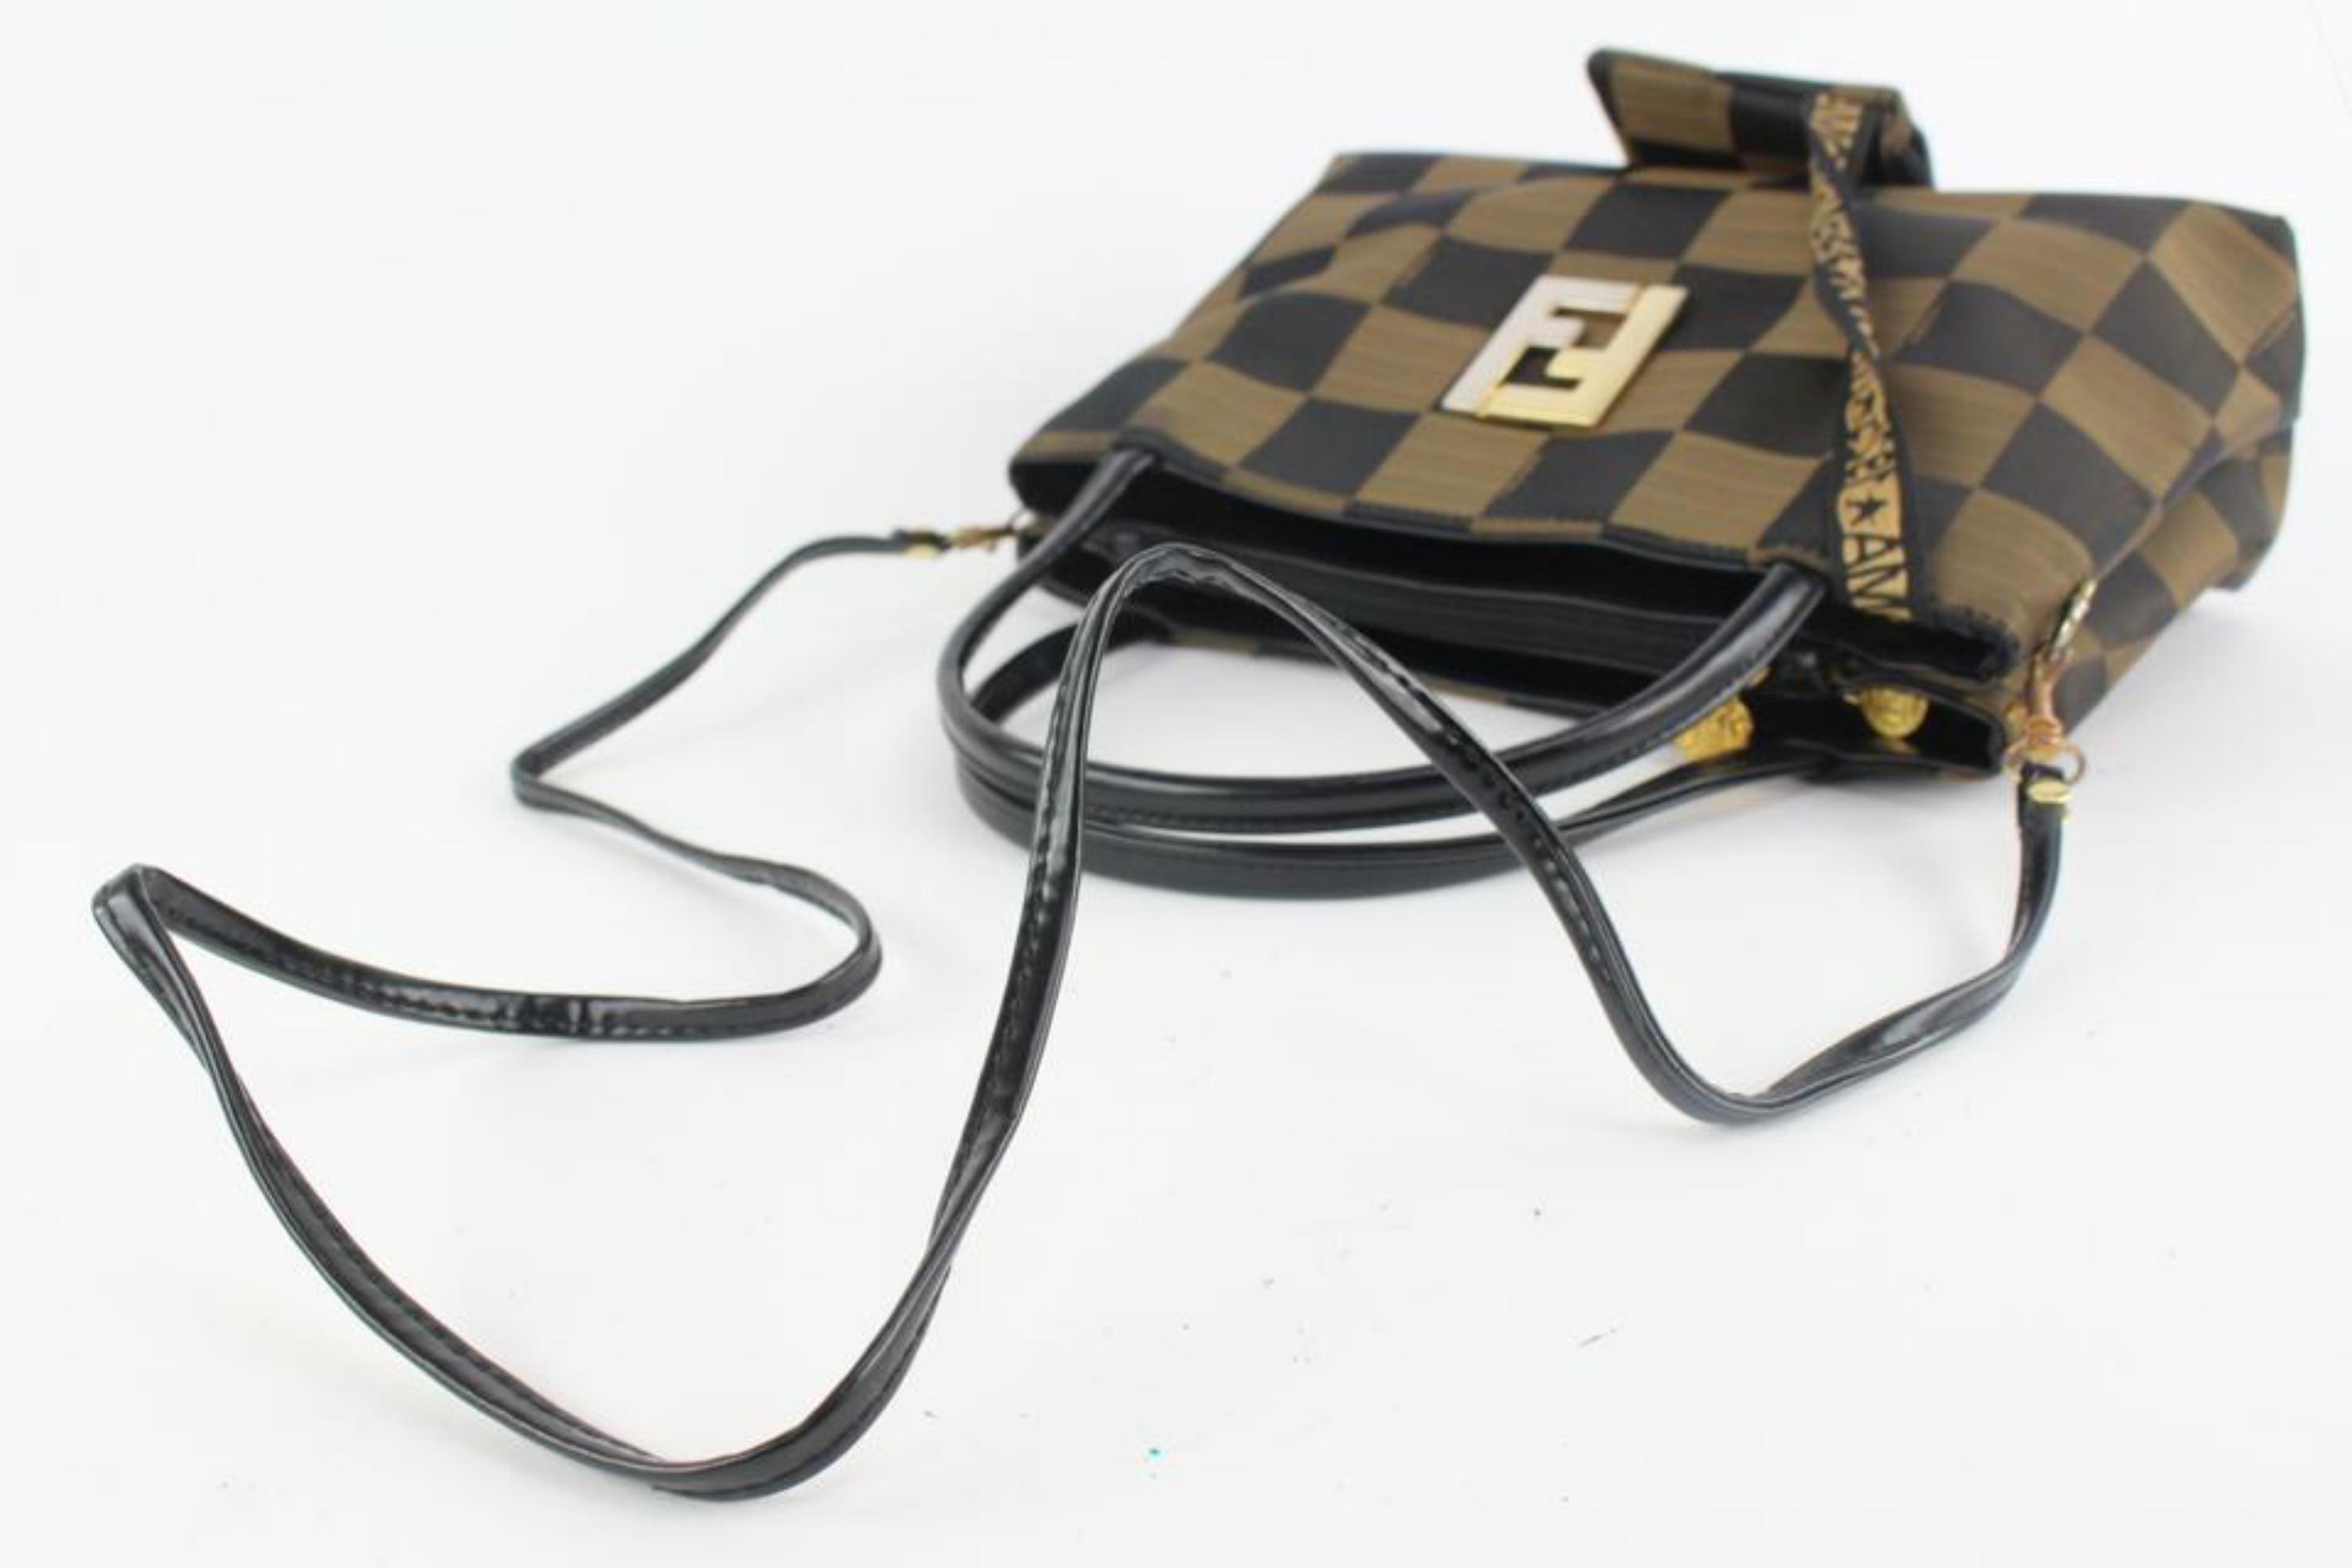 Black Fendi Rare Vintage Brown Checker Box 2way Tote with Pouch 1220f41